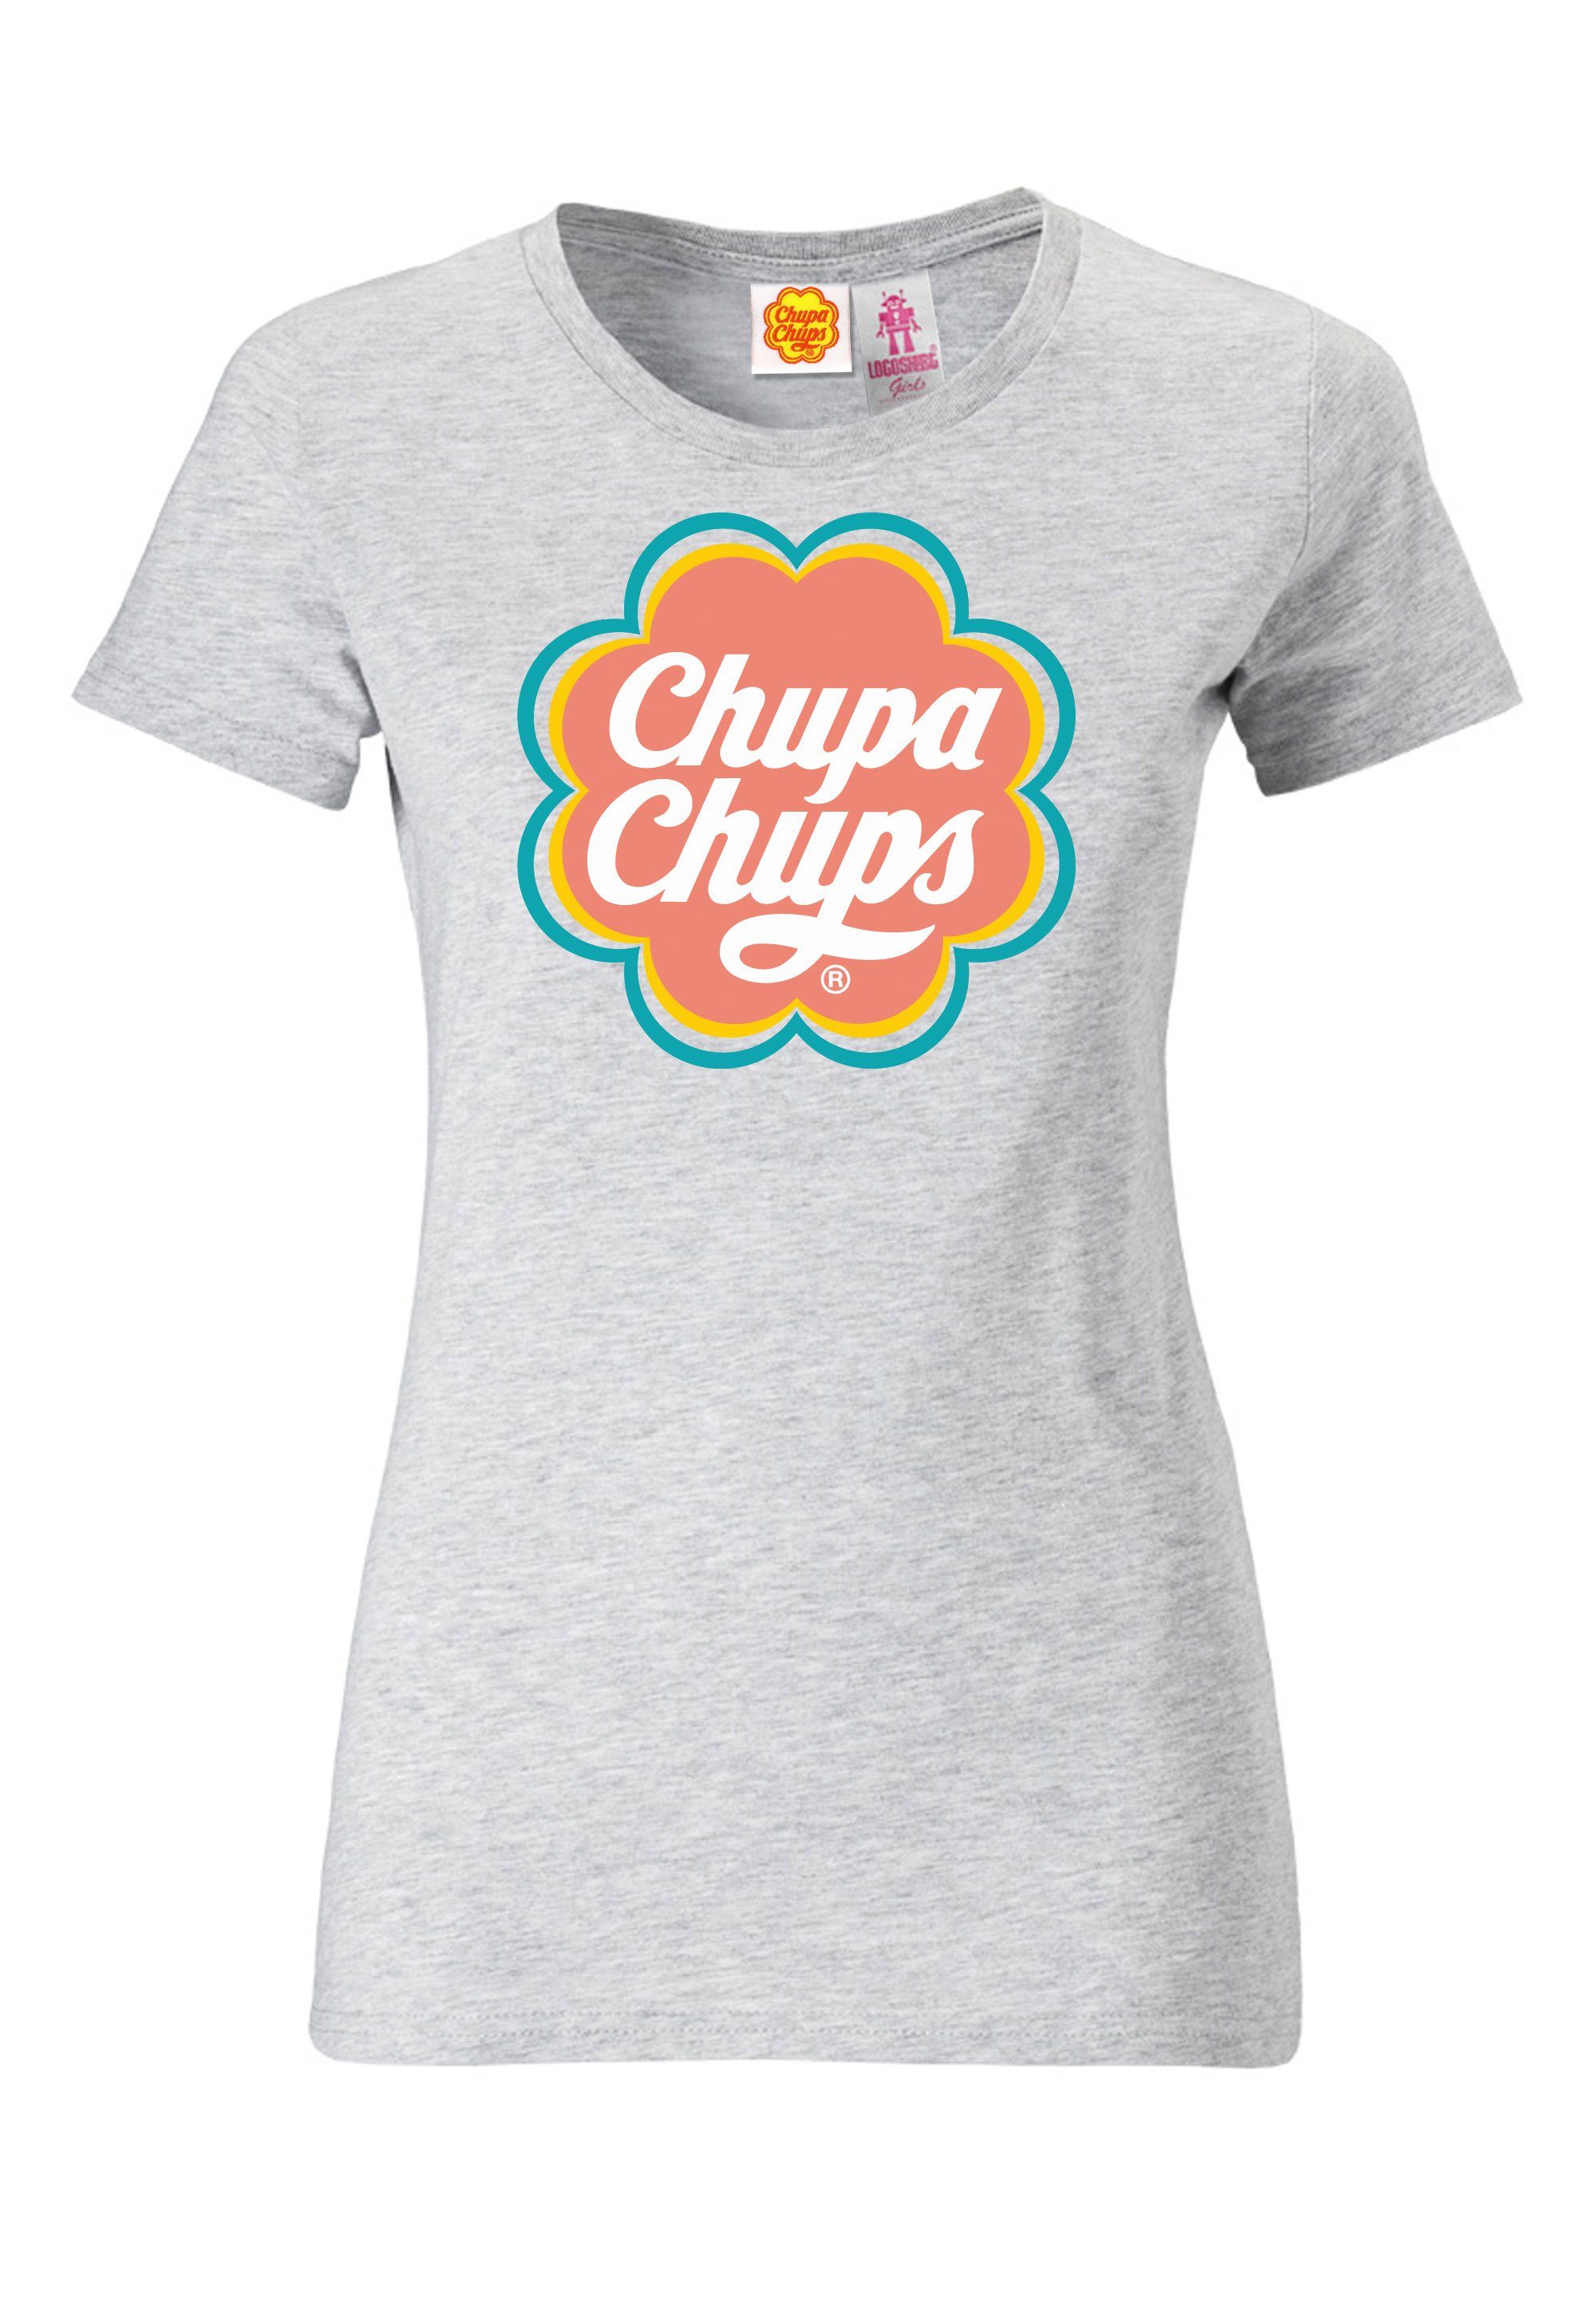 LOGOSHIRT T-Shirt Chupa Chups mit lizenzierten Design